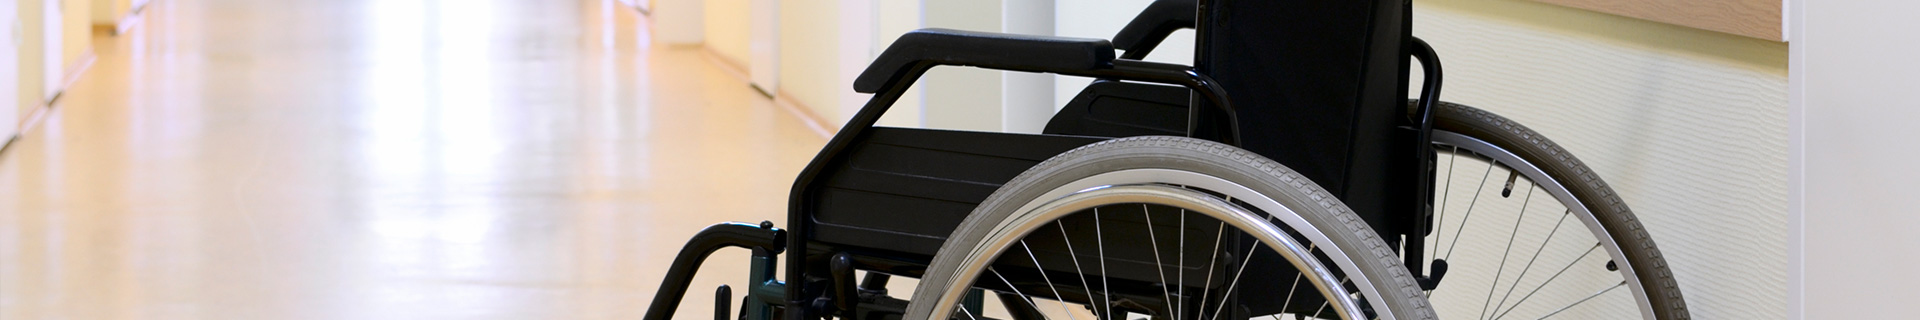 wheel chair in a nursing home